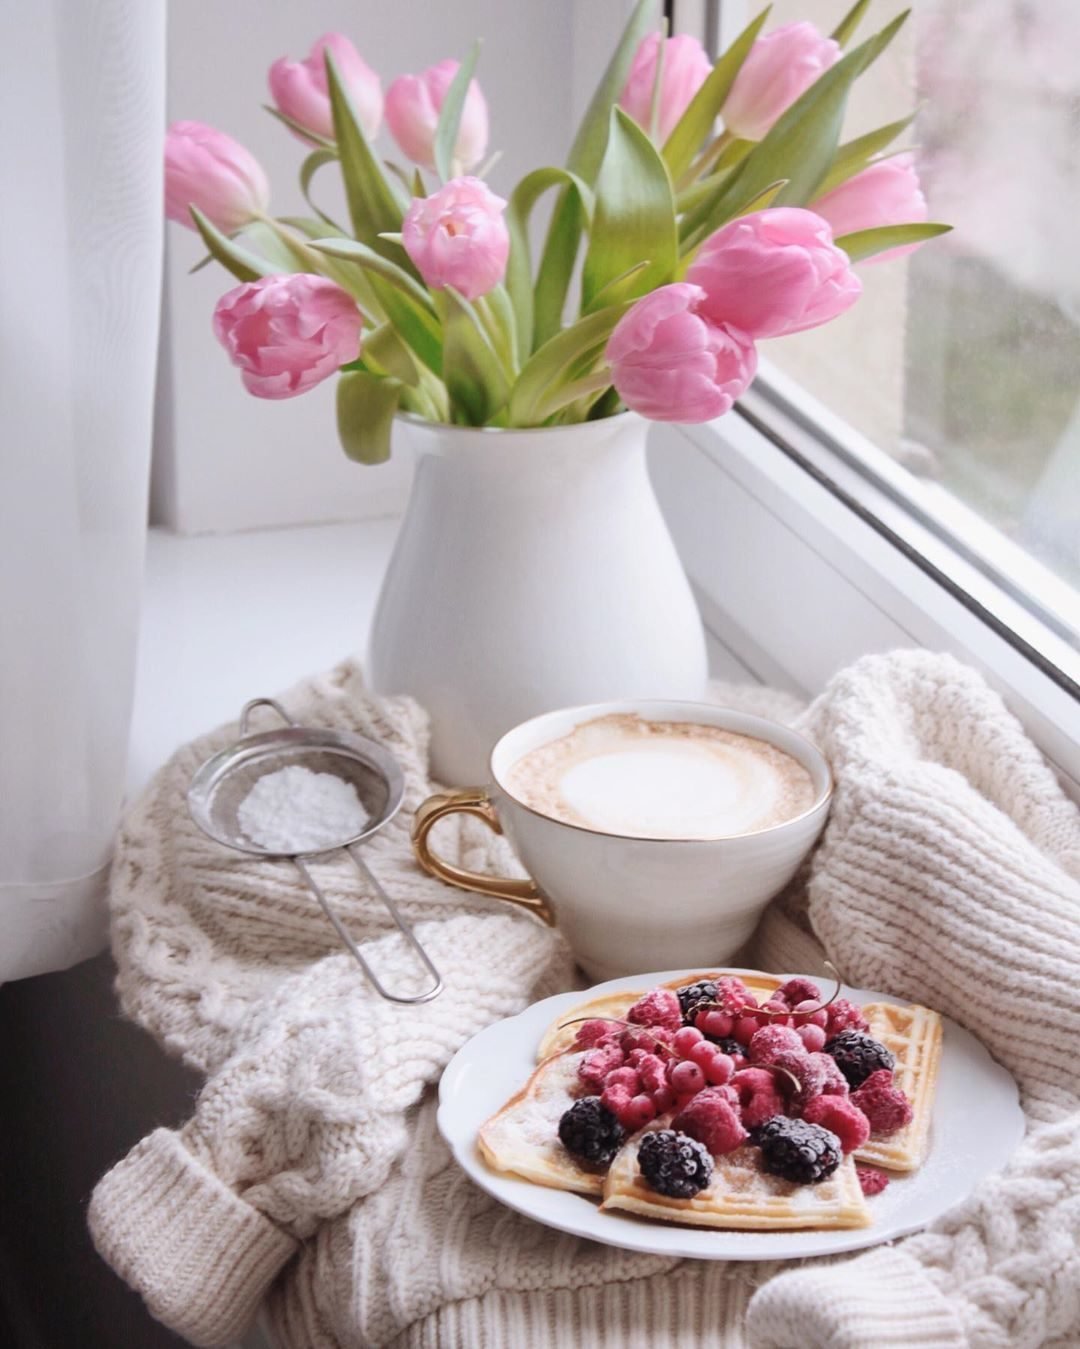 Красивого утра февраля. Завтрак с цветами. Красивый завтрак. Утренние цветы. Красивые цветы в чашке.